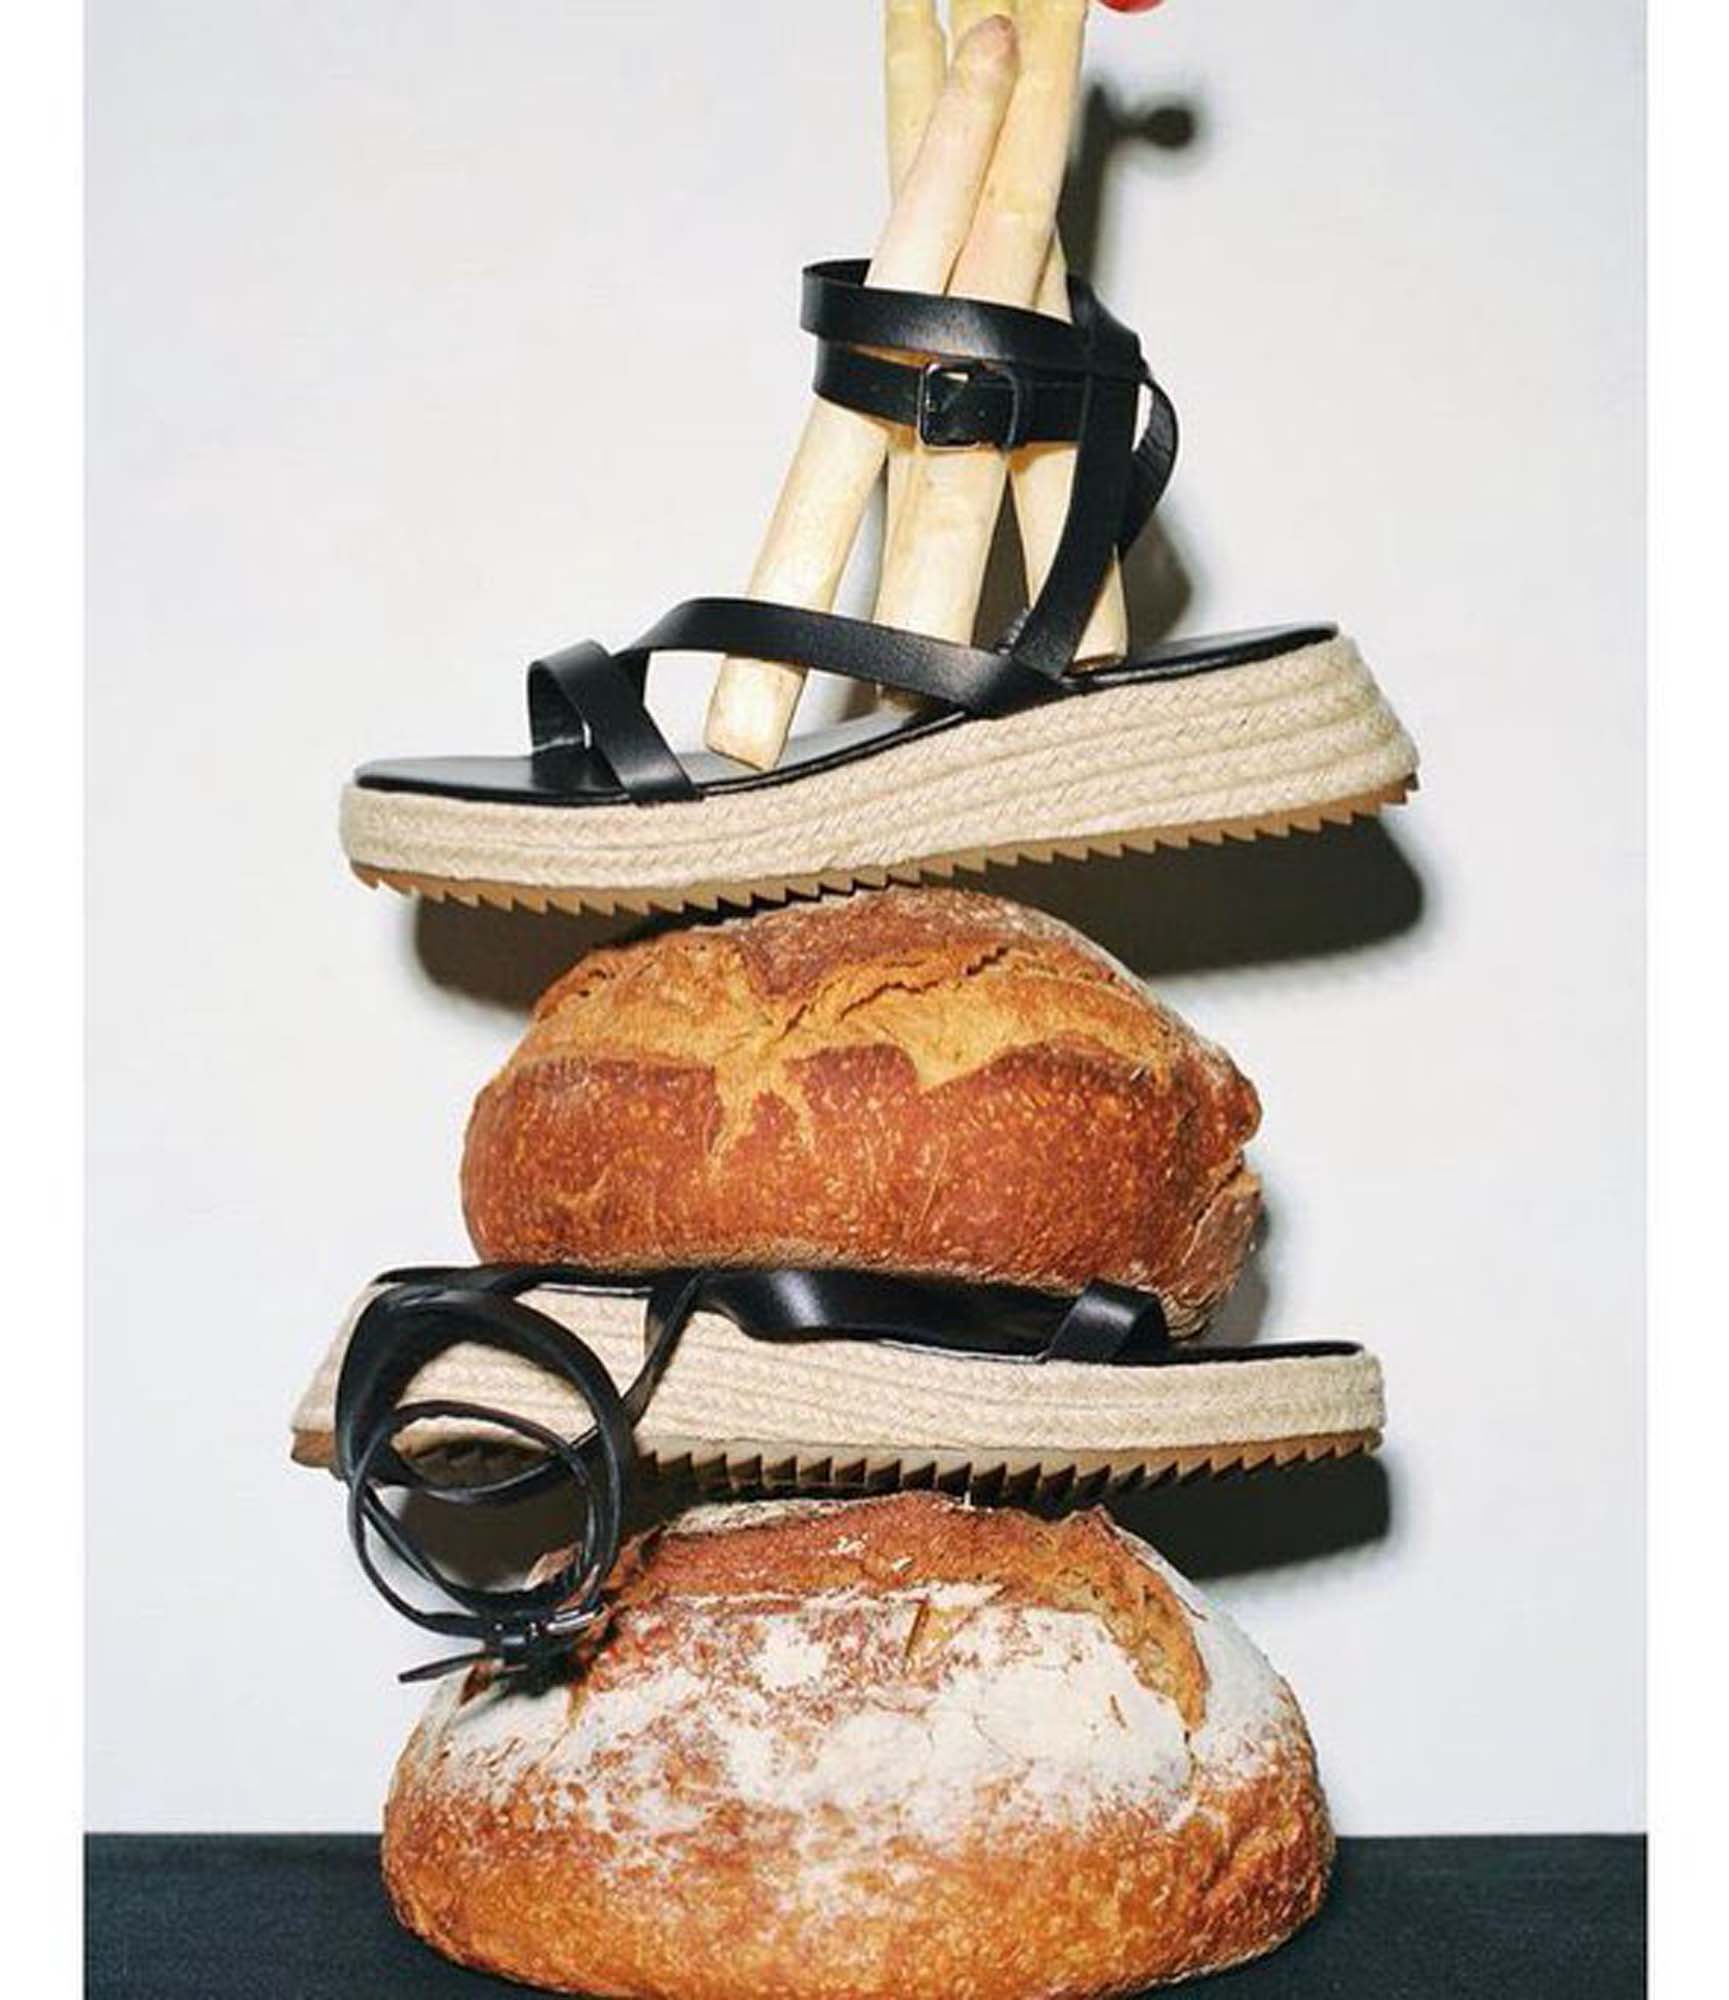 Ünlü Inditex markası Zara'dan ağızları açık bırakan reklam! Nimeti ayakla çiğnediler! Ekmek üstüne ayak basıldı! Zara haddini bil!